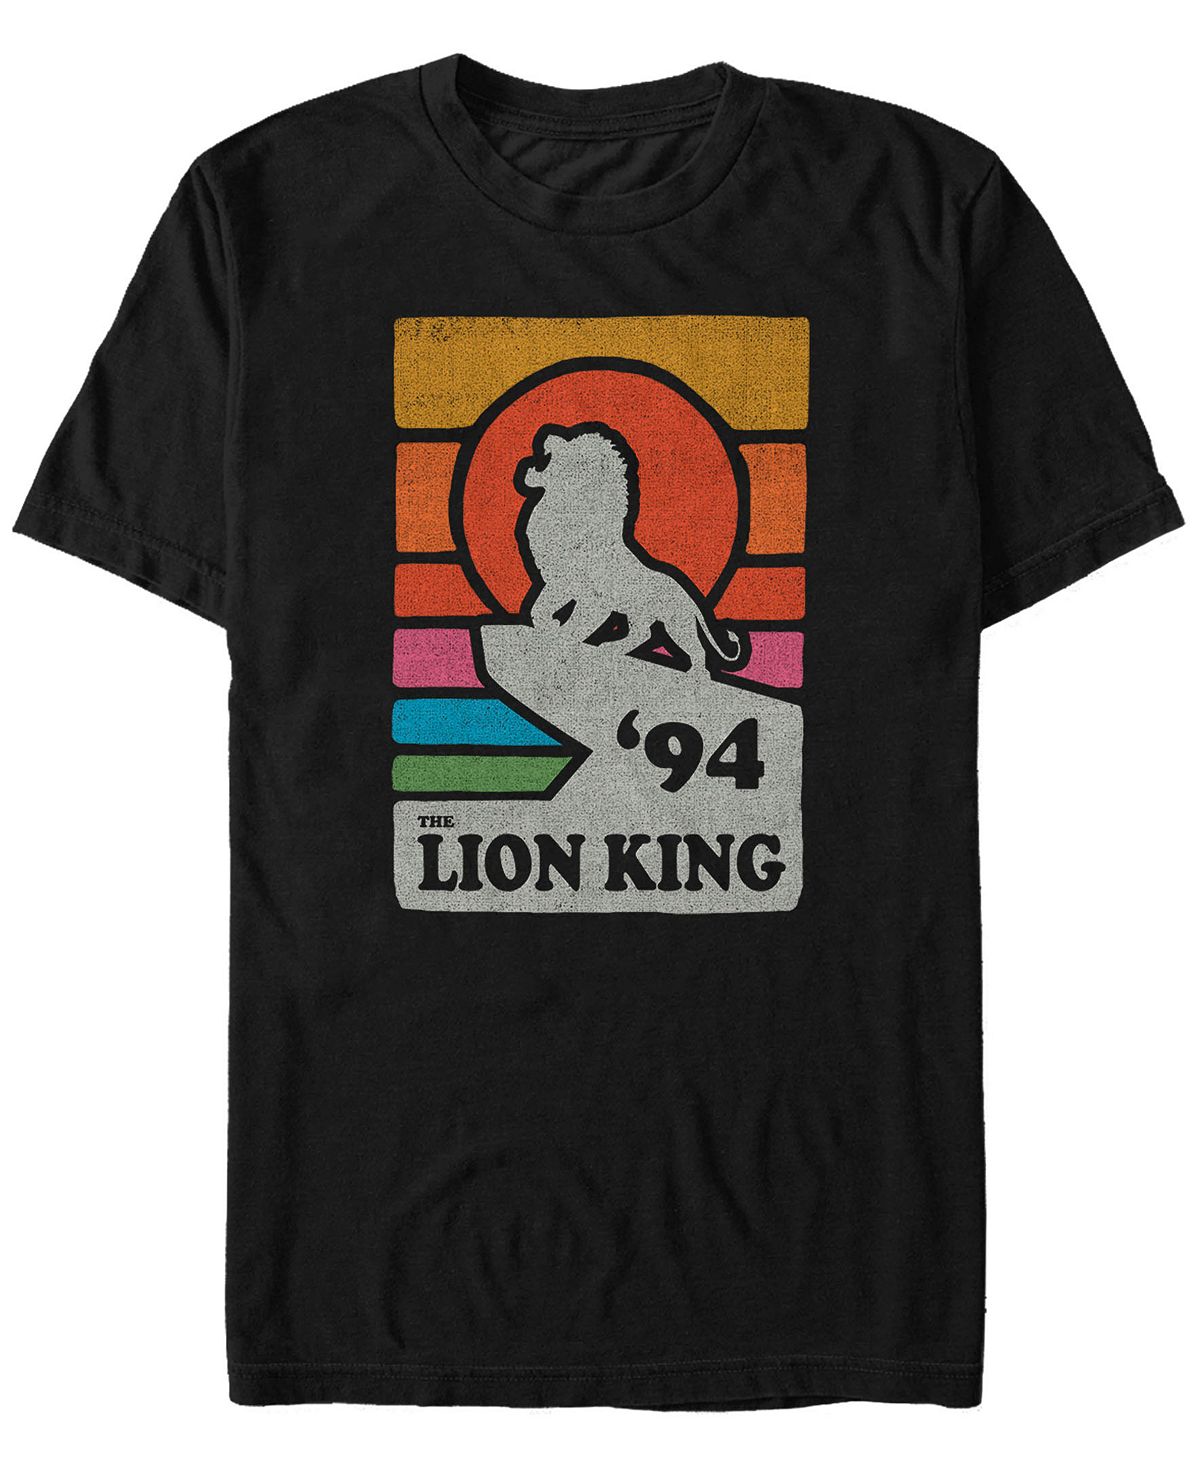 Мужская футболка disney the lion king pride rock в стиле ретро с художественным постером футболка с коротким рукавом icollection женская сорочка Fifth Sun, черный